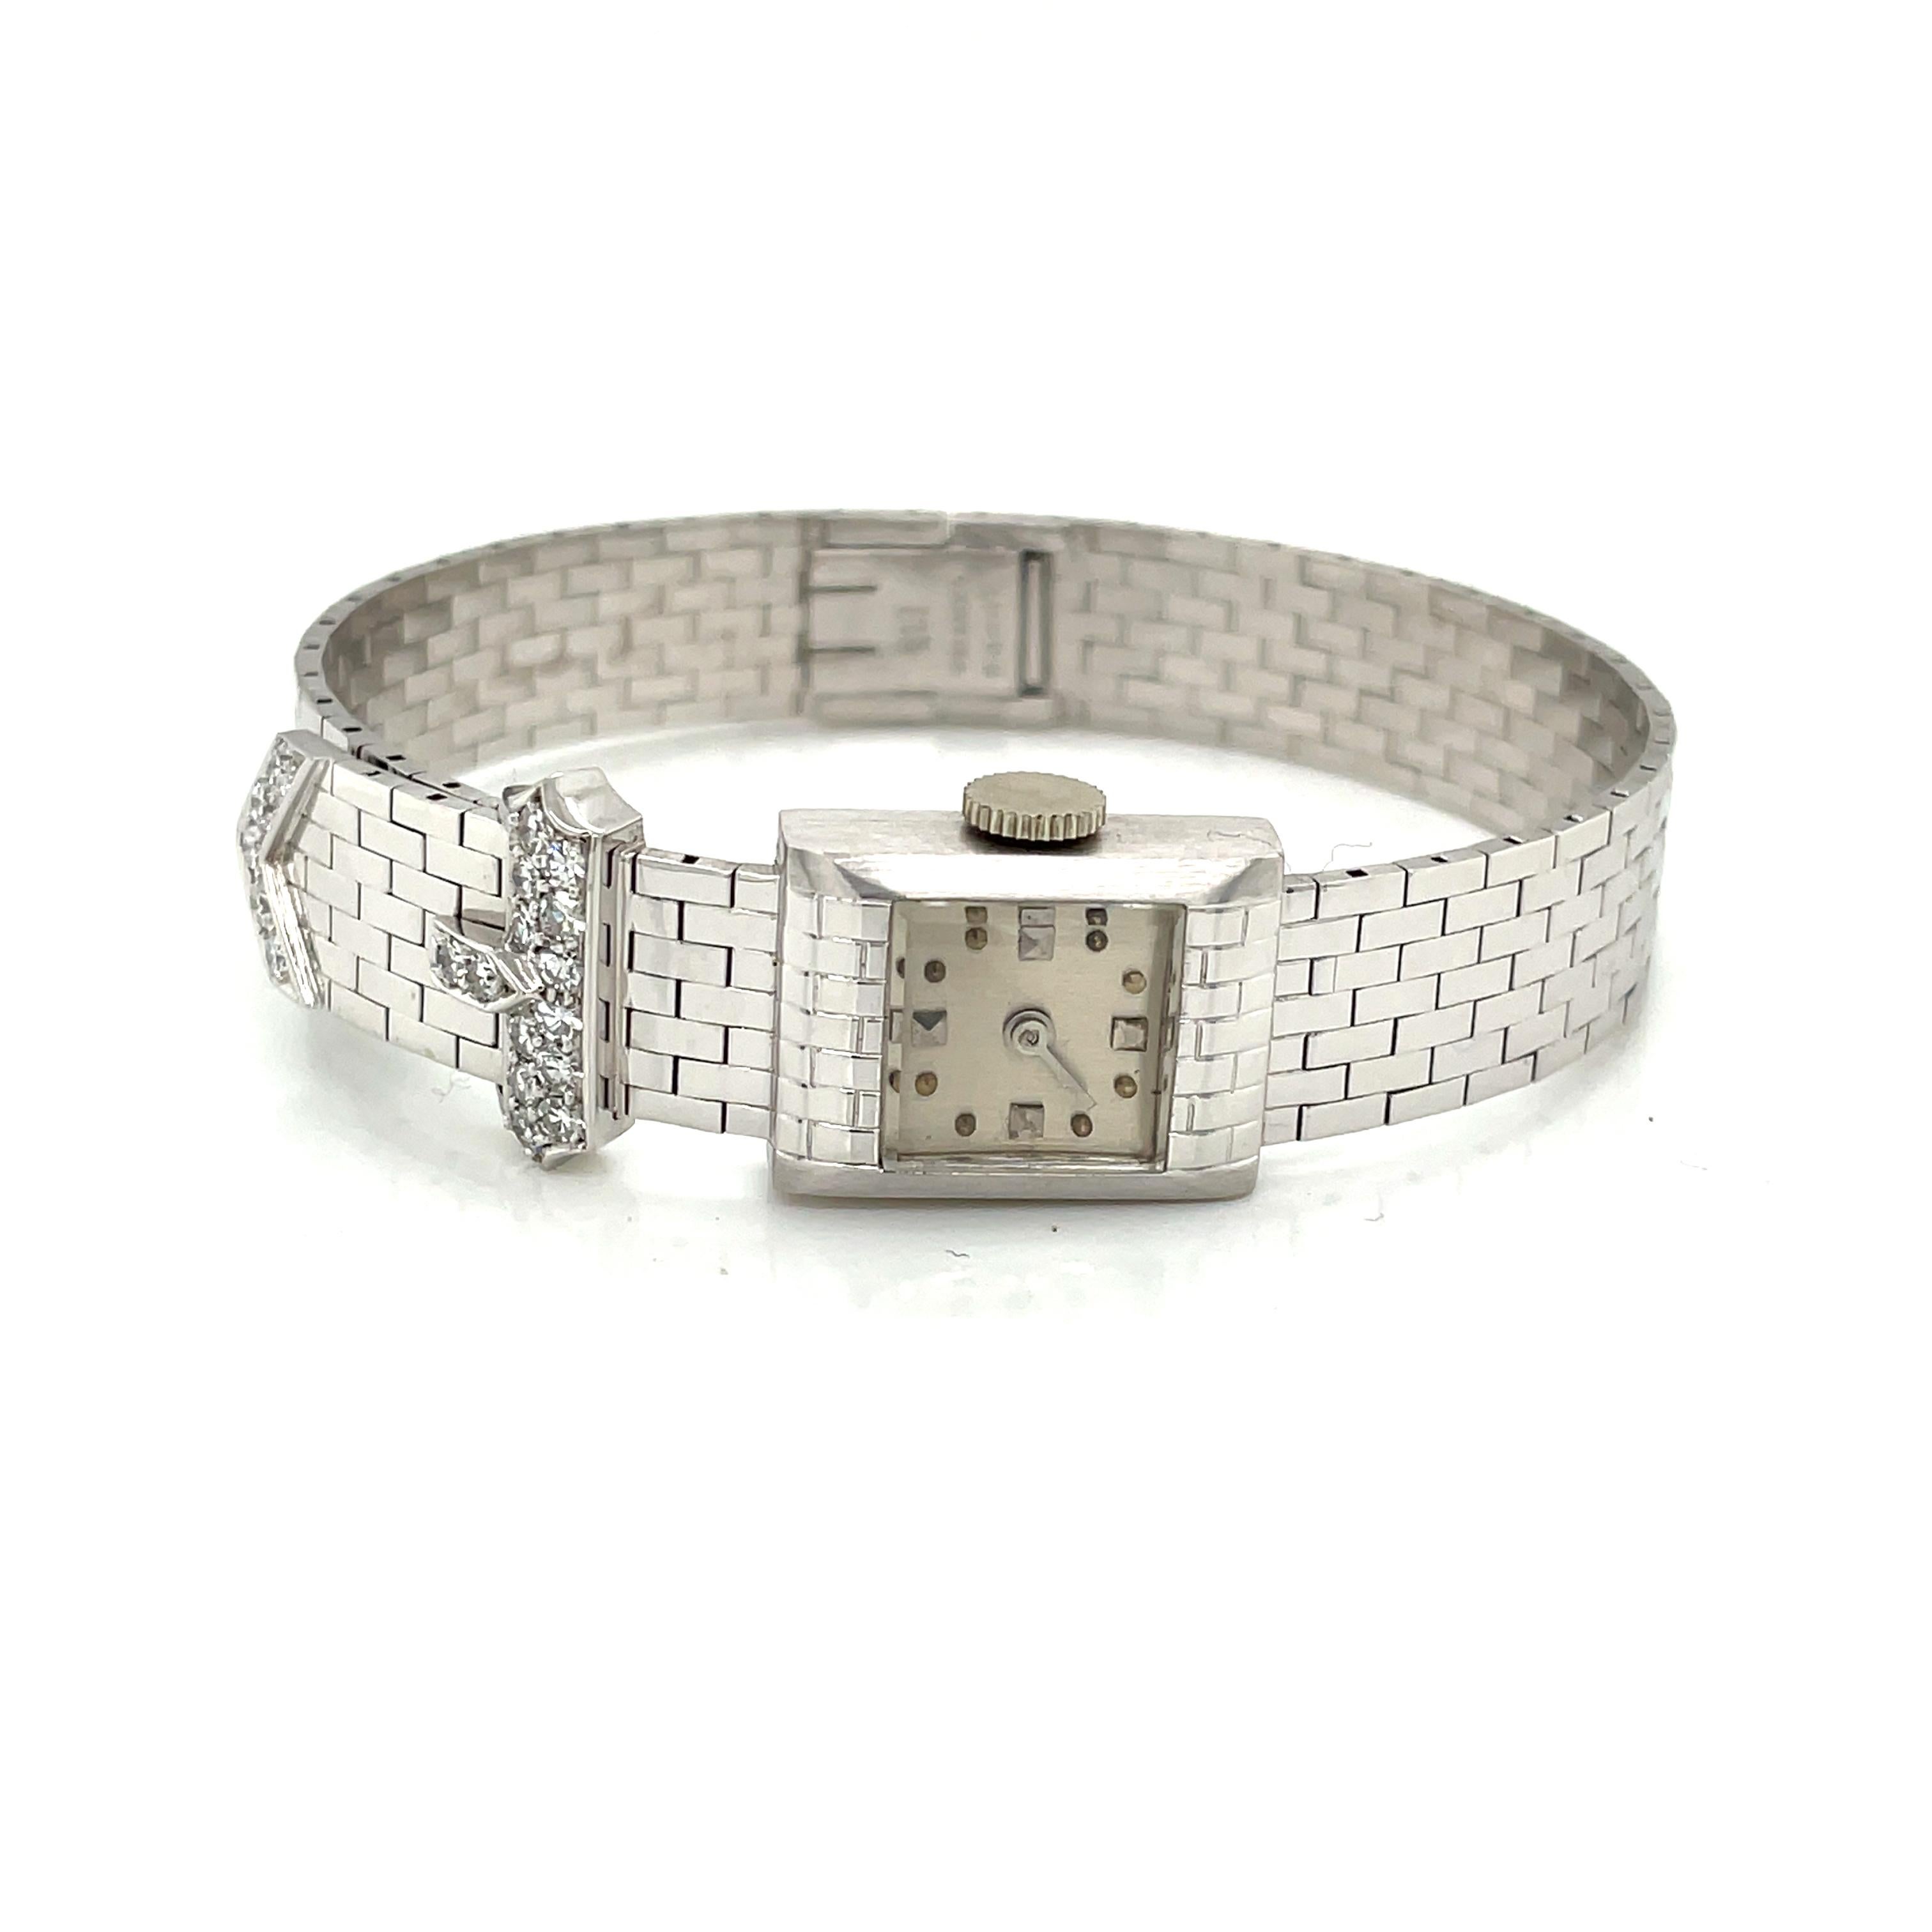 Exquise Cartier vintage rehaussée de diamants, ce bracelet Art Deco en or blanc 14 carats abrite une montre CXC à mouvement à remontage manuel Concord 17 rubis.
avec boîtier de montre en or blanc satiné A.I.C. #2546 et fermoir à boucle de Cartier